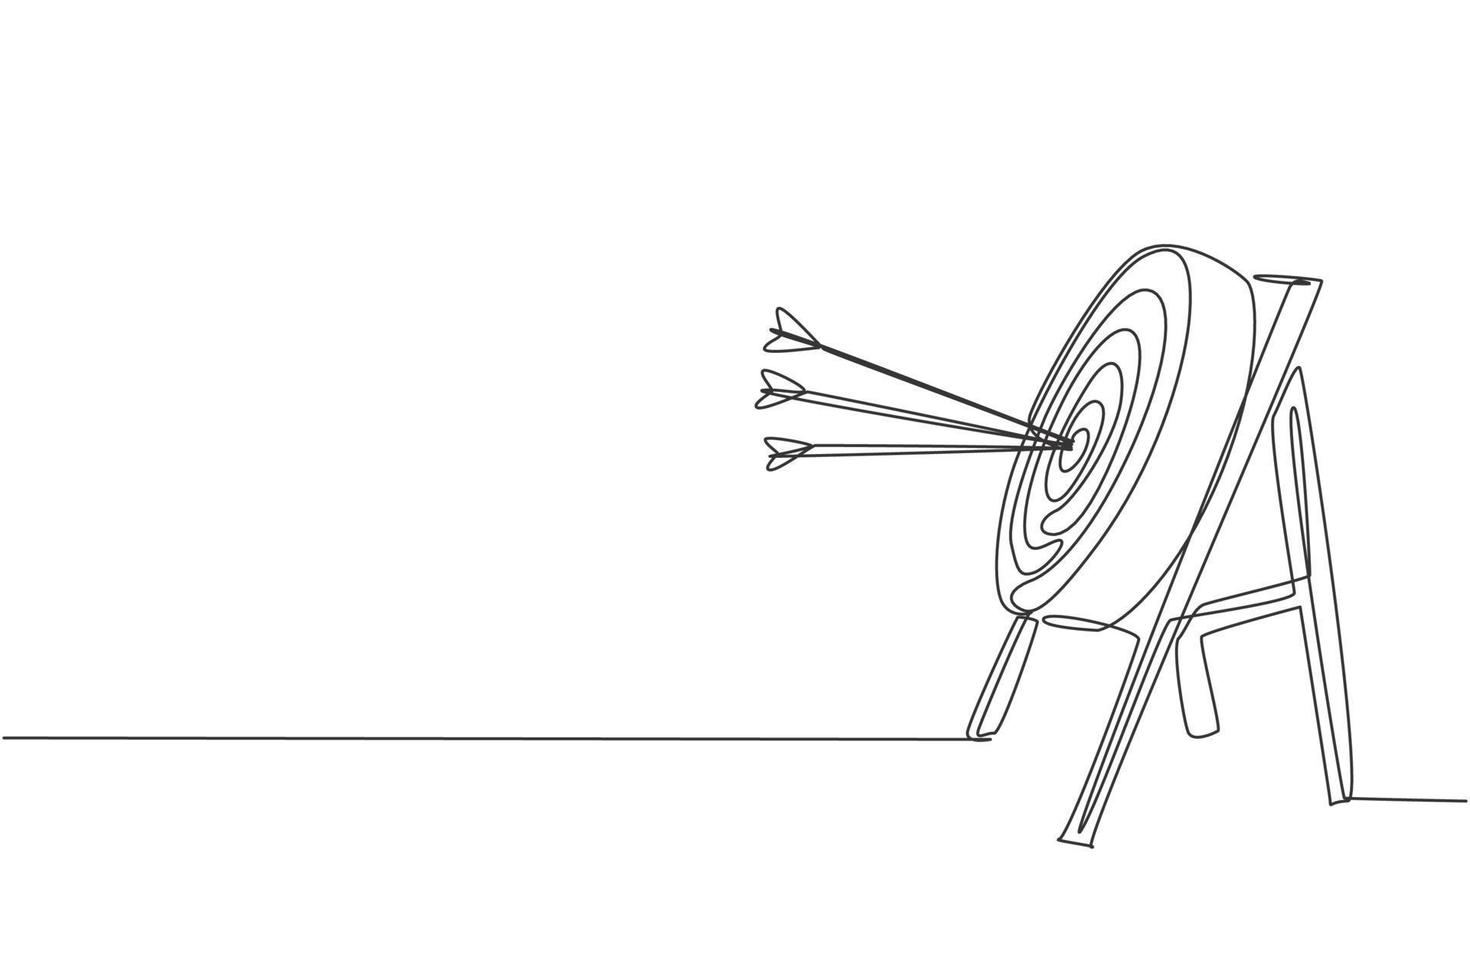 um desenho de linha contínua de flechas foi disparado alvo de tiro com arco, vista lateral. treinamento esportivo de tiro com arco e conceito de exercício. ilustração em vetor design gráfico de desenho gráfico de linha única dinâmica